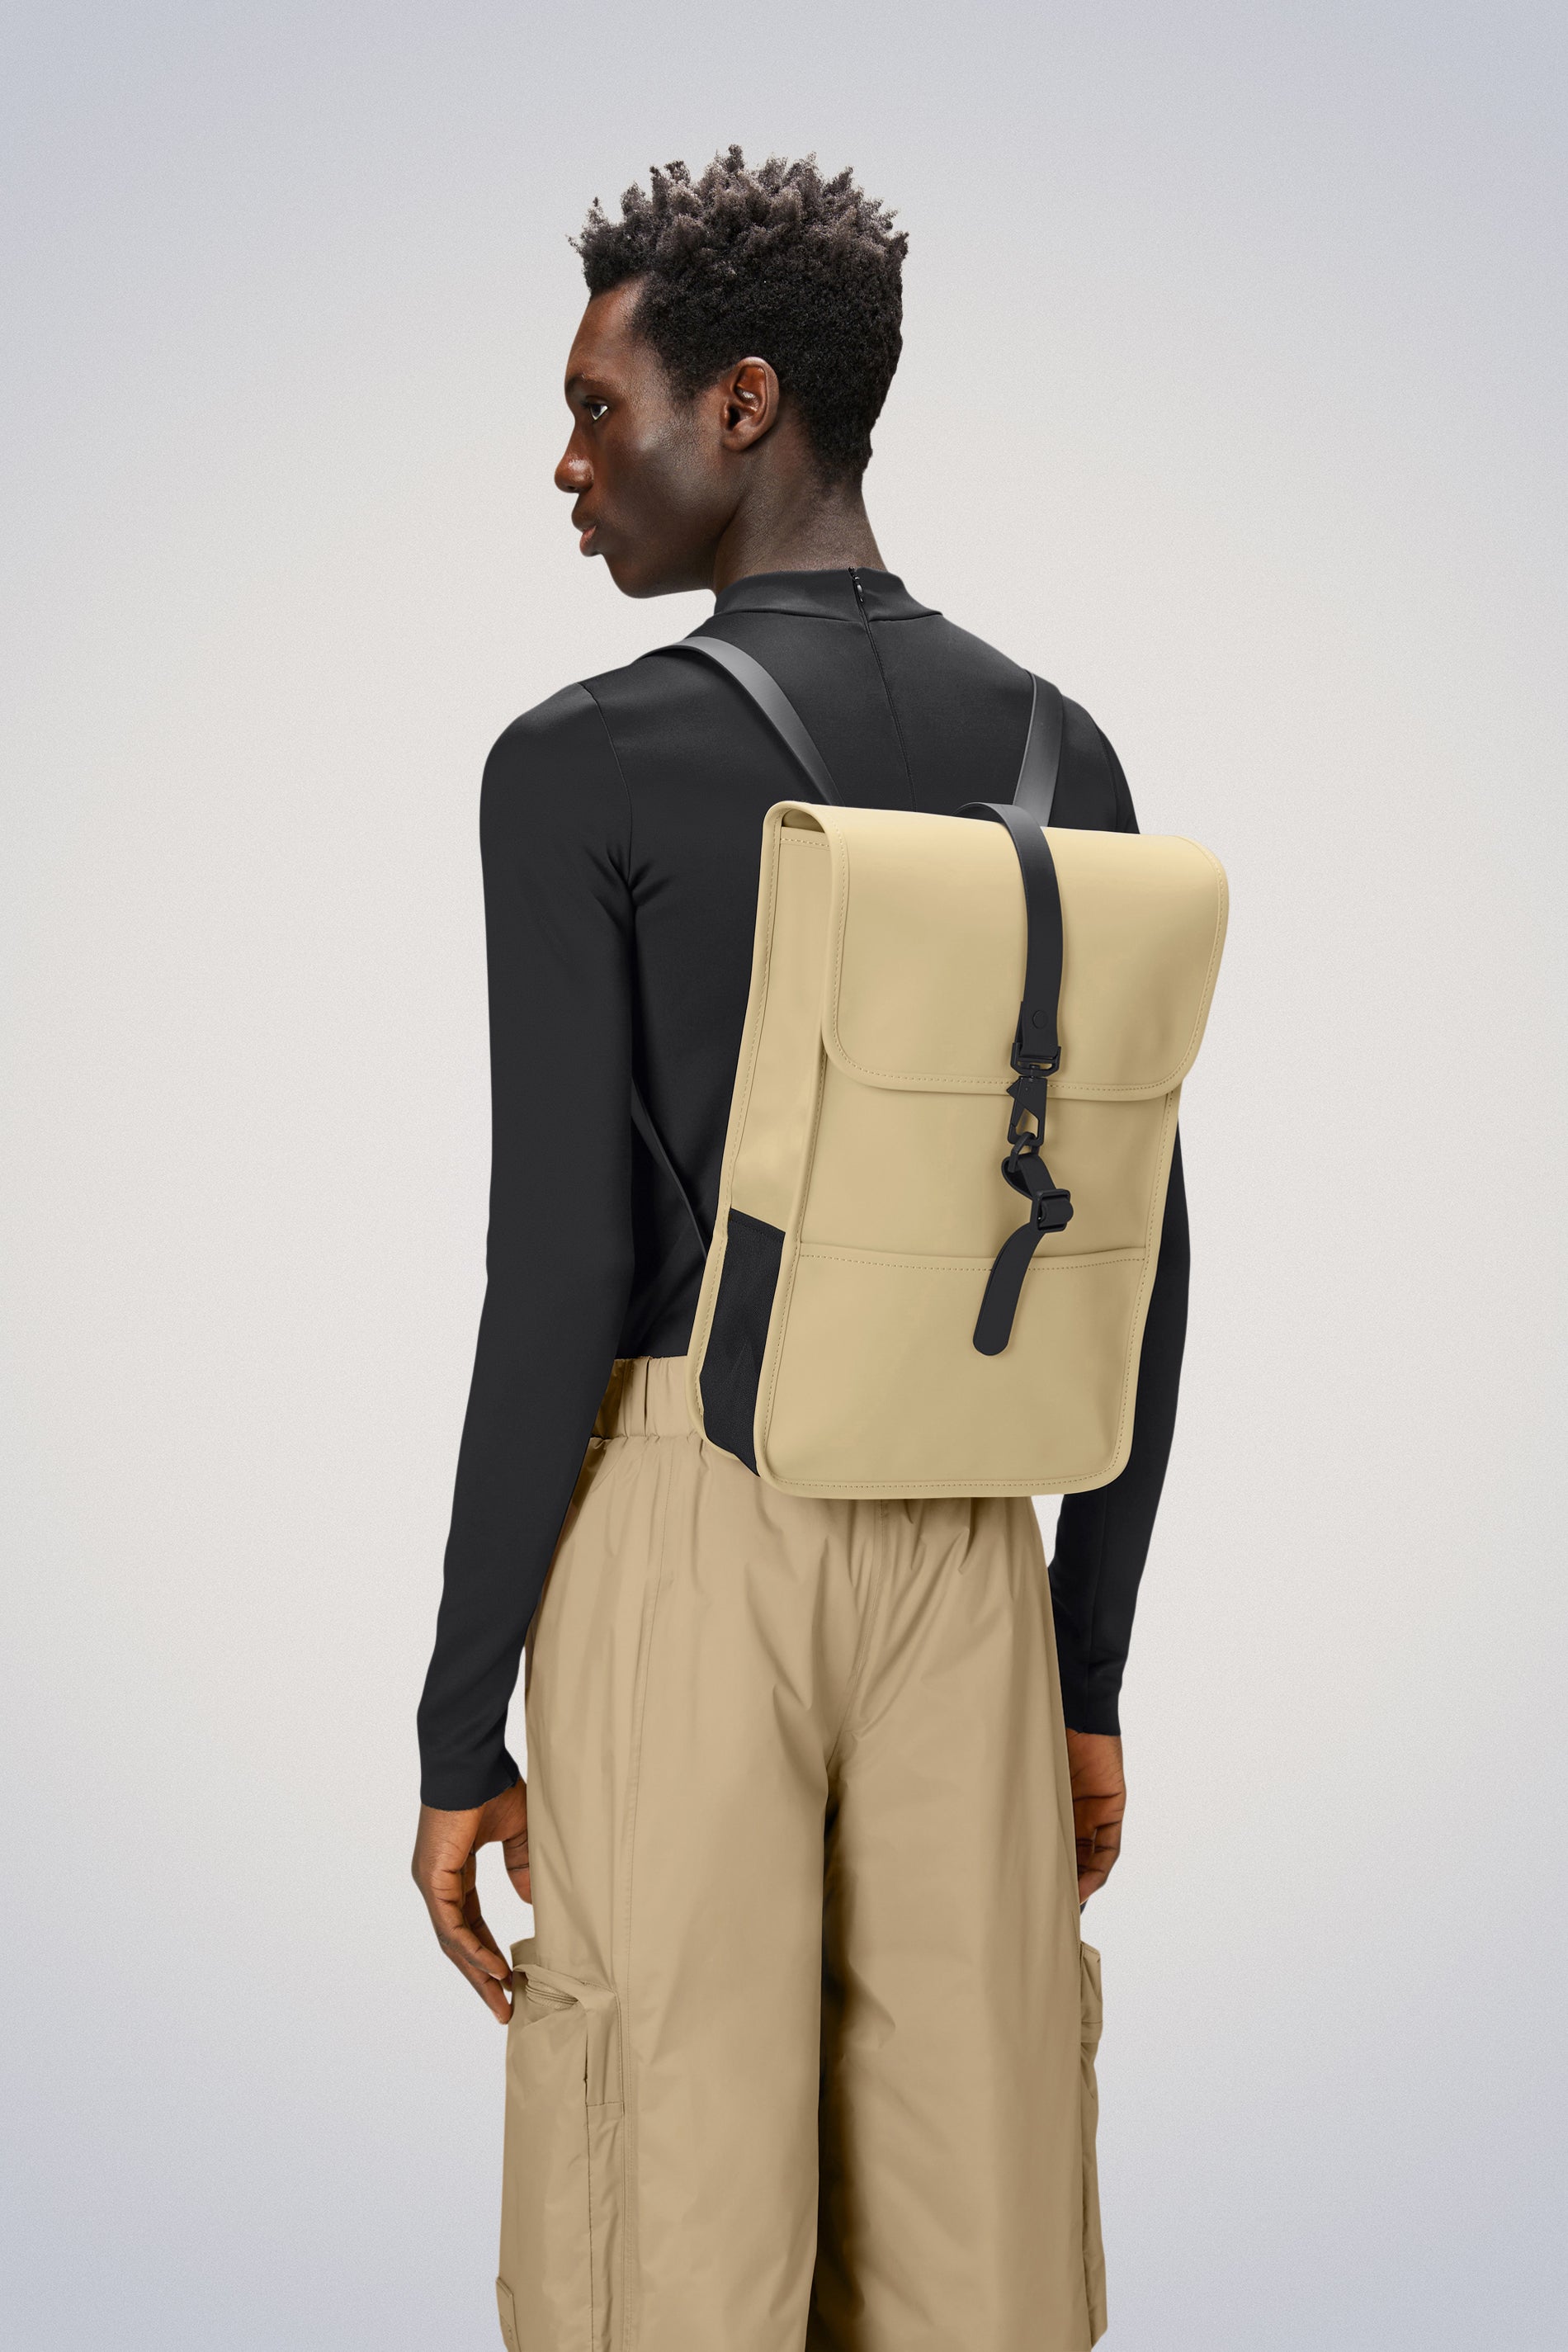 Waterproof Backpack | Buy Waterproof Rucksack & Daypack | Rains